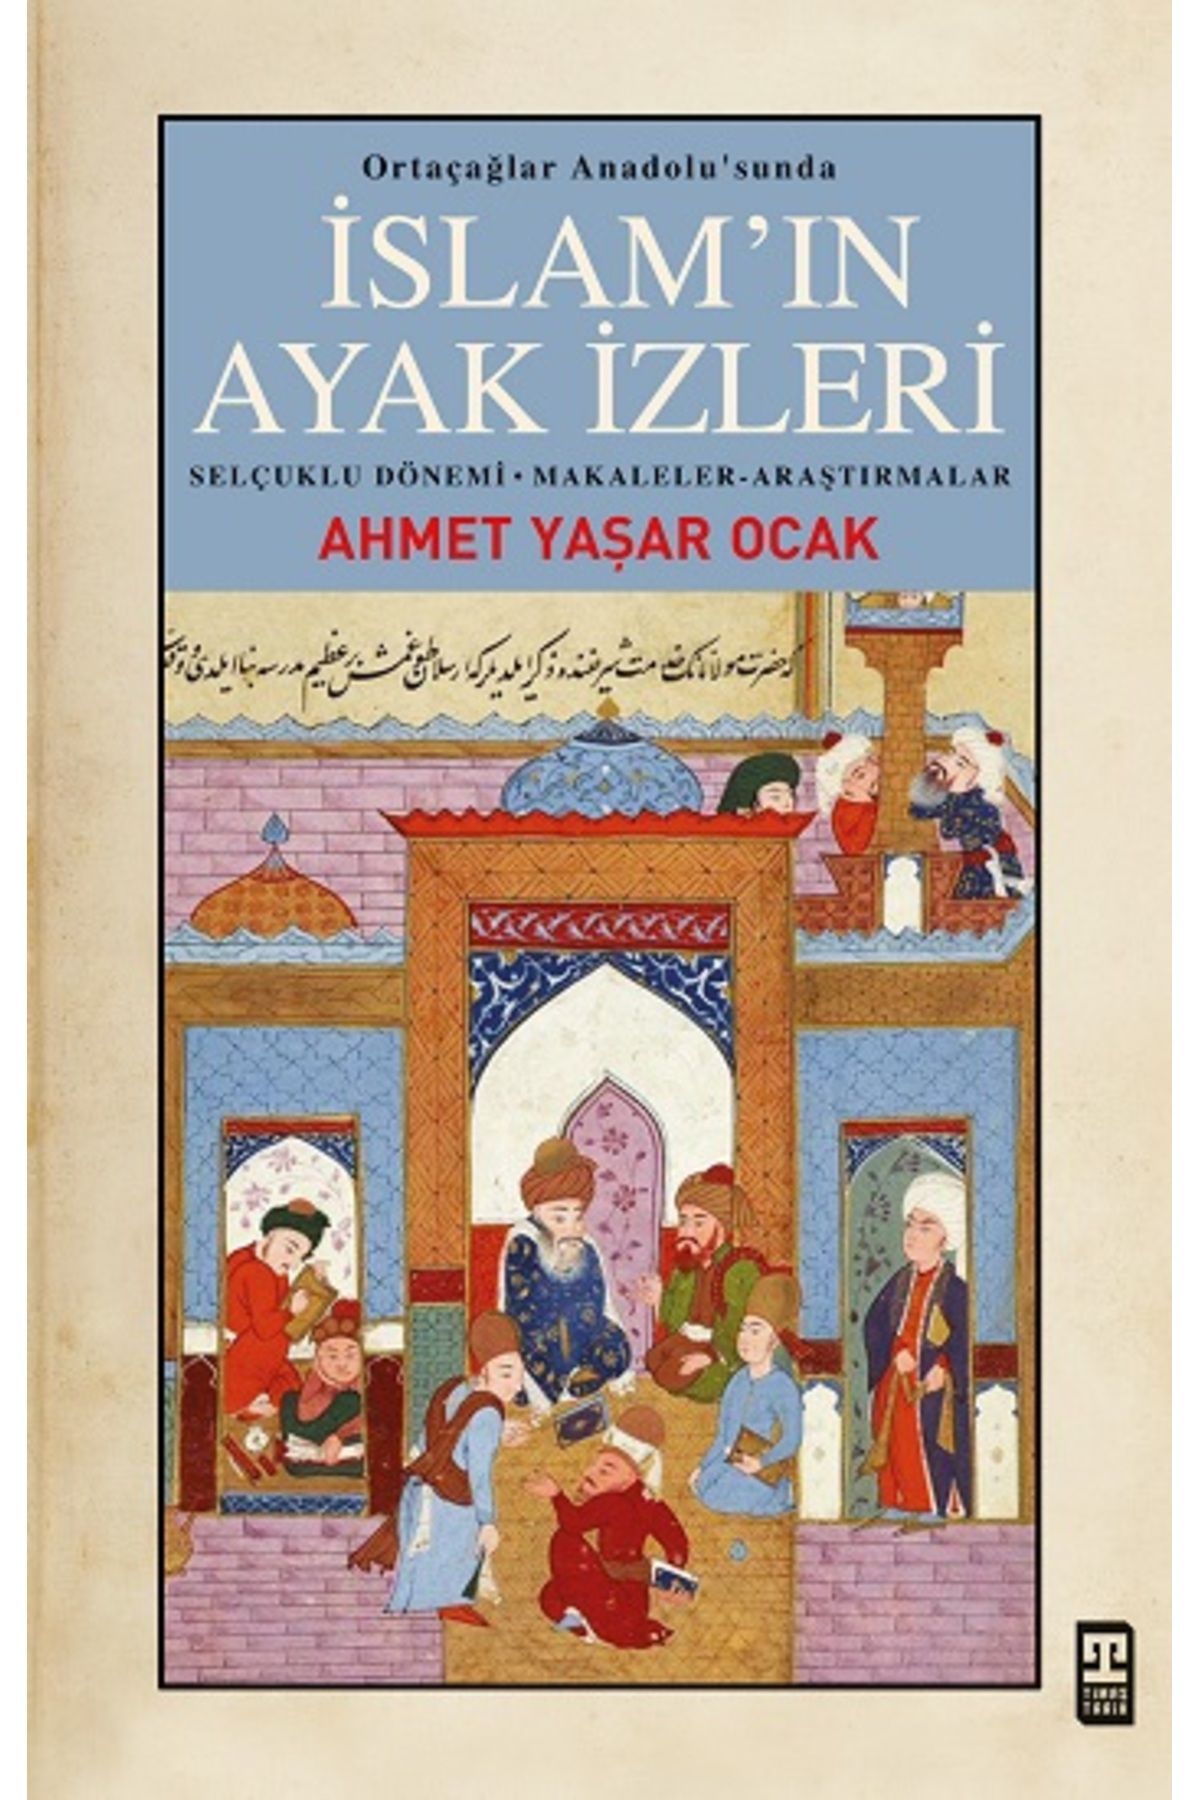 Timaş Yayınları İslam'ın Ayak İzleri kitabı - Ahmet Yaşar Ocak - Timaş Yayınları